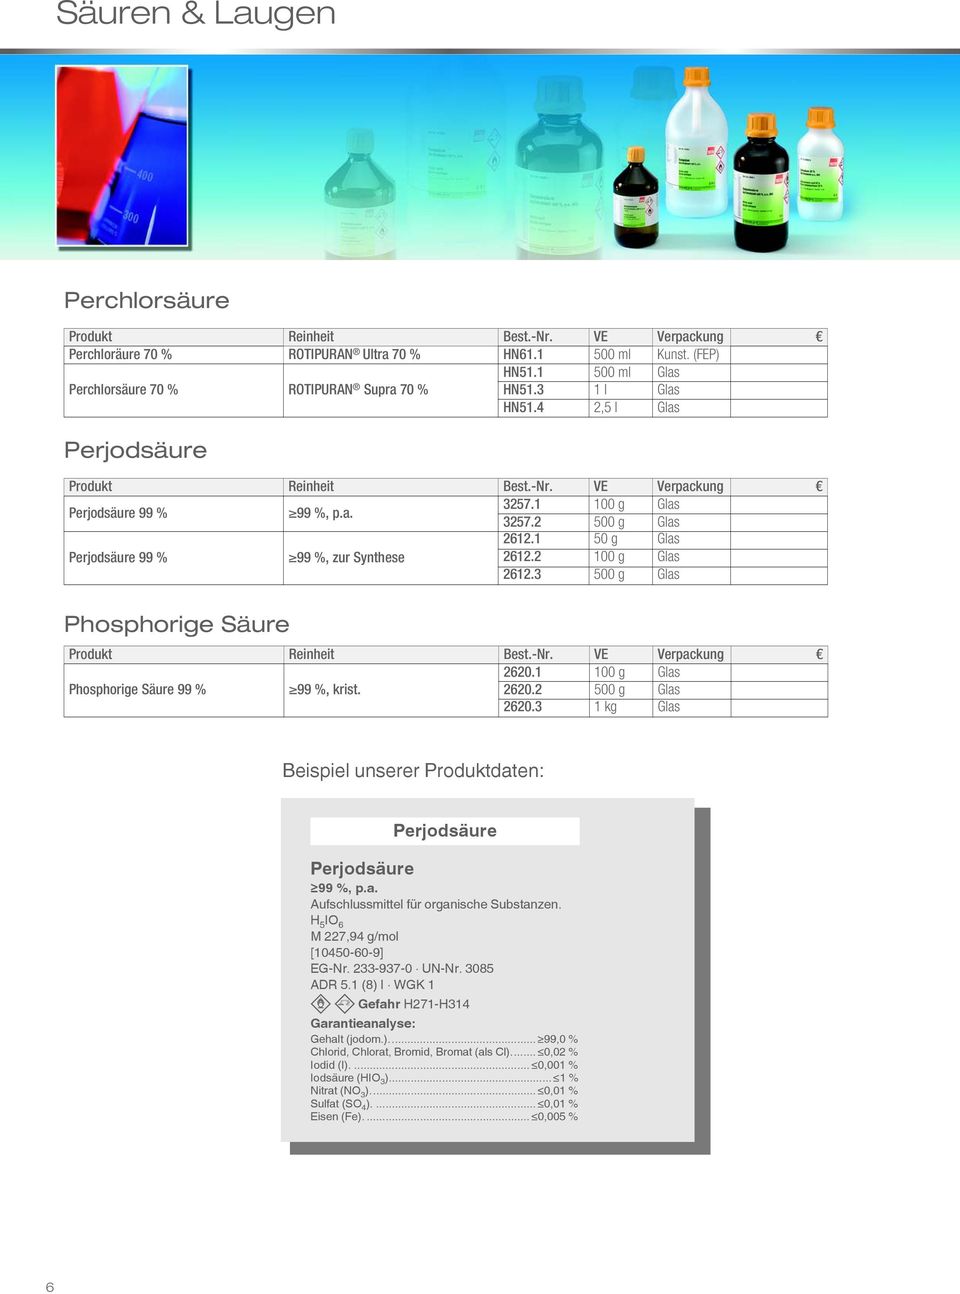 3 500 g Glas Phosphorige Säure 2620.1 100 g Glas Phosphorige Säure 99 % 99 %, krist. 2620.2 500 g Glas 2620.3 1 kg Glas Beispiel unserer Produktdaten: Perjodsäure Perjodsäure 99 %, p.a. Aufschlussmittel für organische Substanzen.